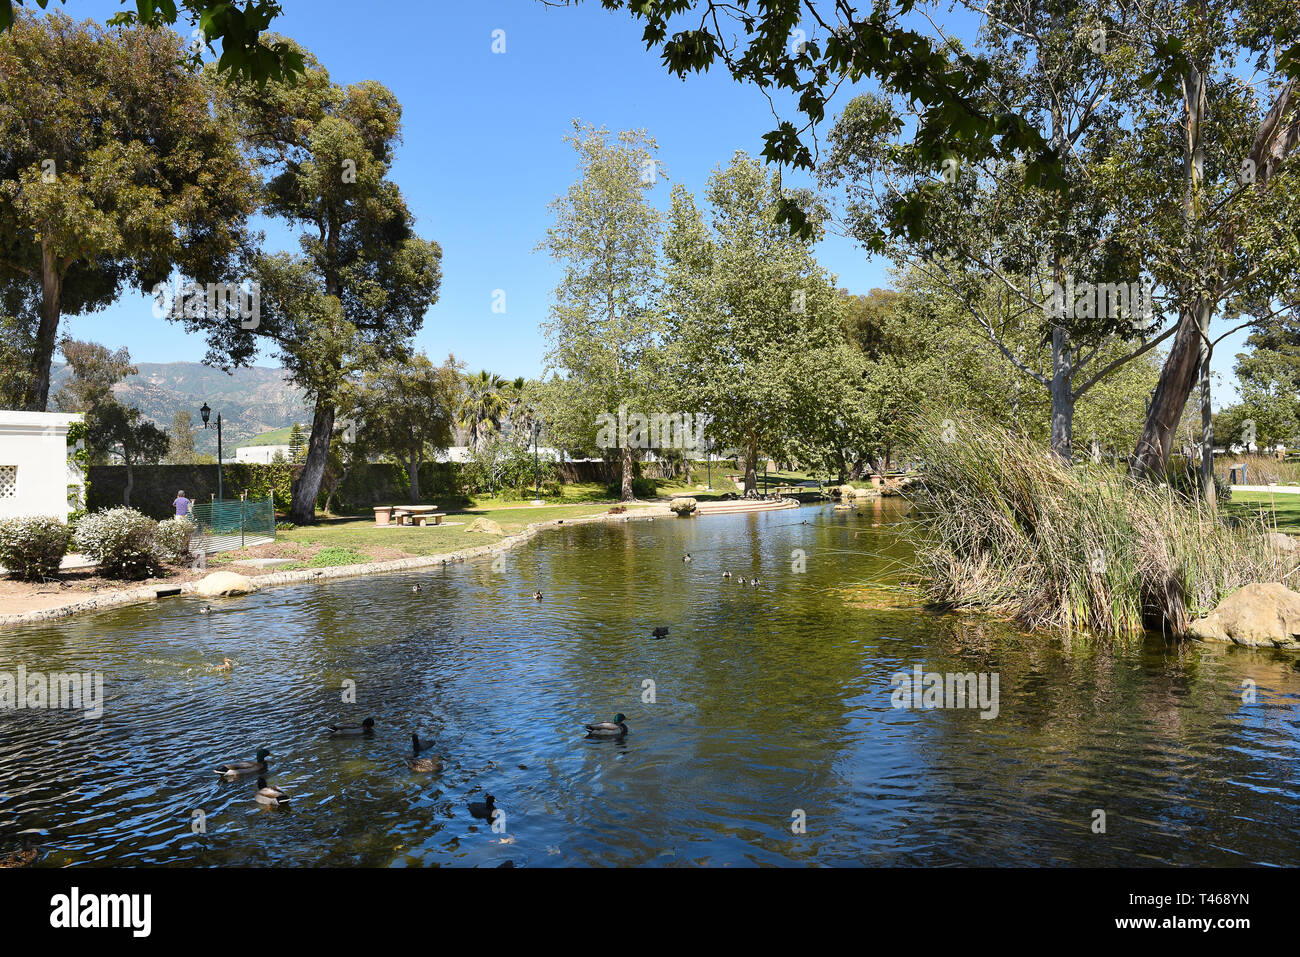 SANTA BARBARA, California - 11 Aprile 2019: Stagno al Chase Palm Park. Un parco pubblico lungo il lungomare con aree di gioco, stagno, aree per picnic e una wedd Foto Stock